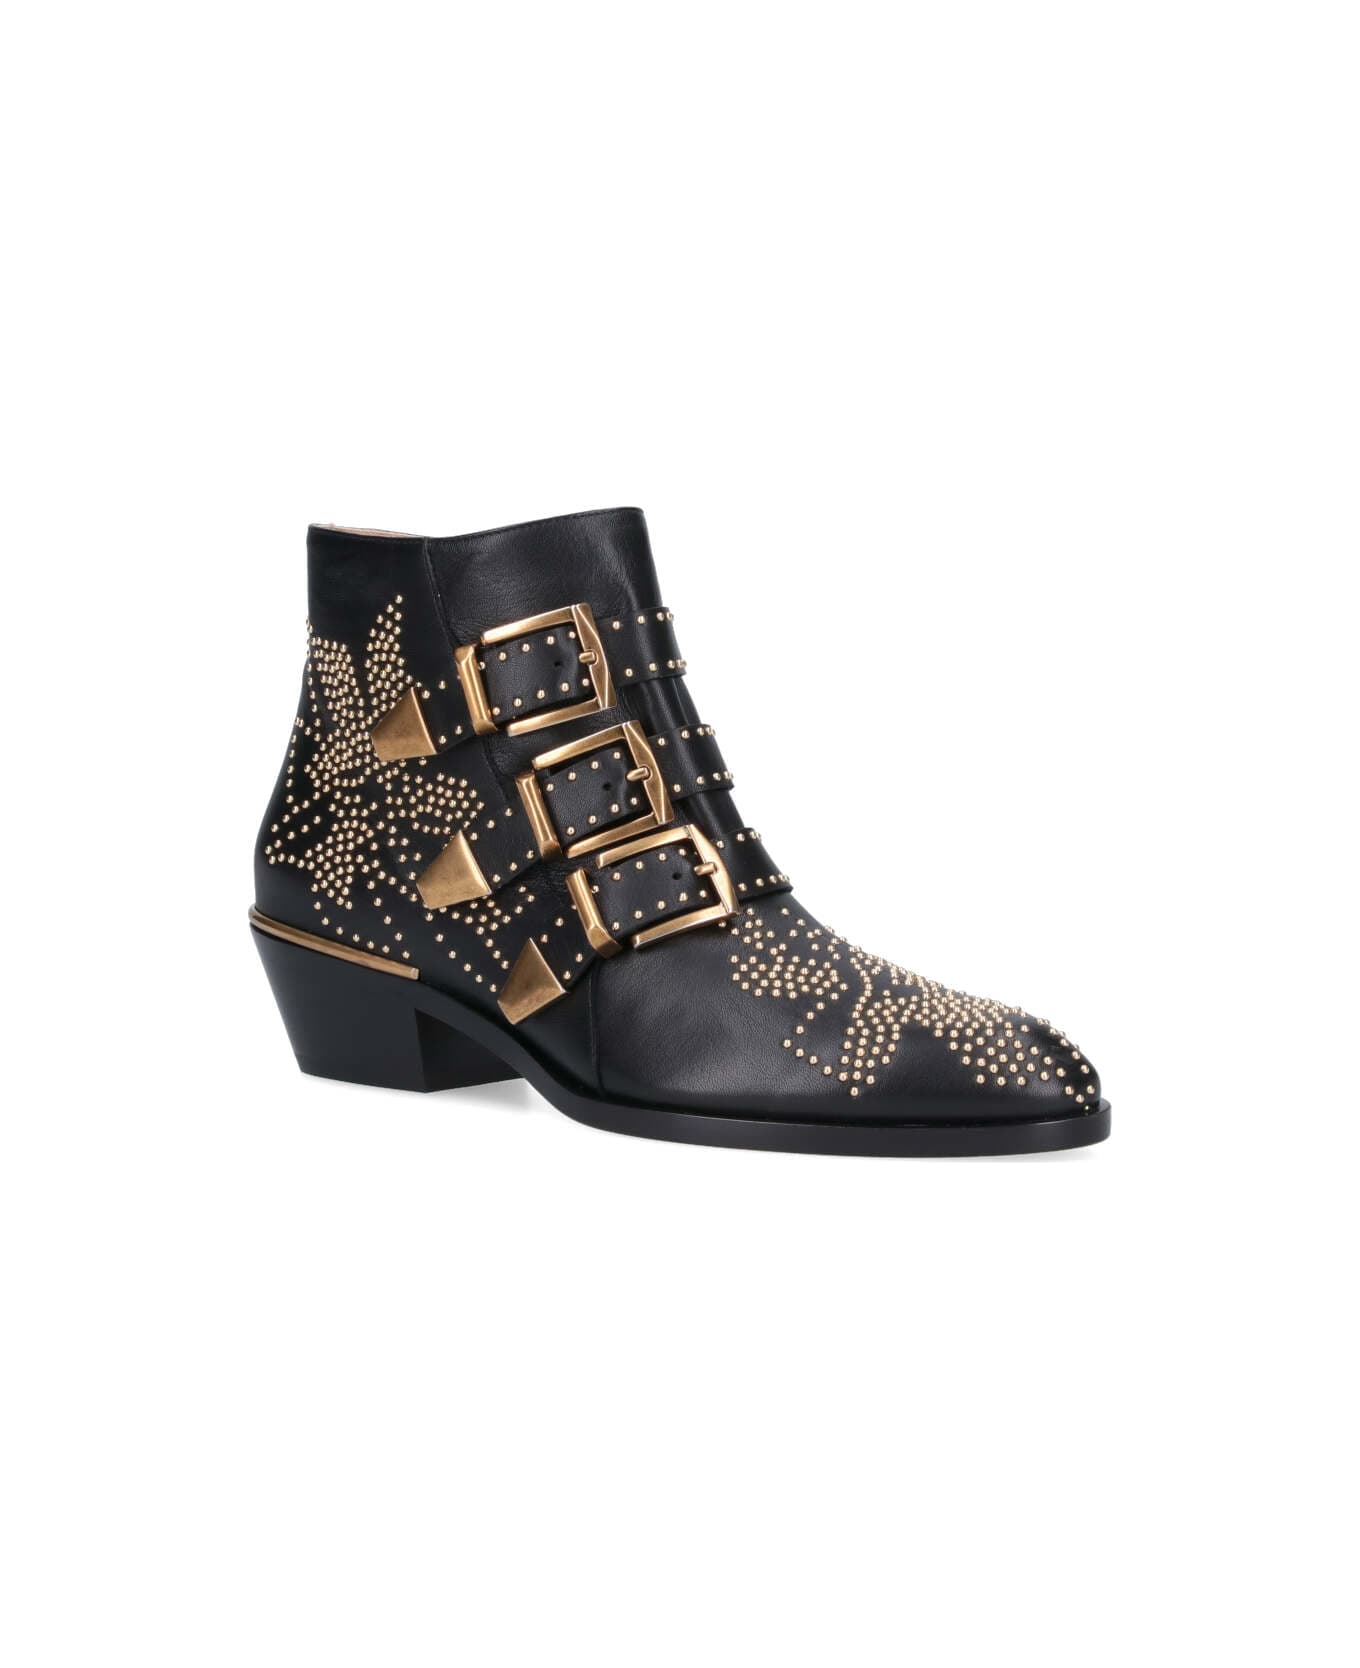 Chloé Susanna Embellished Buckled Boots - Black